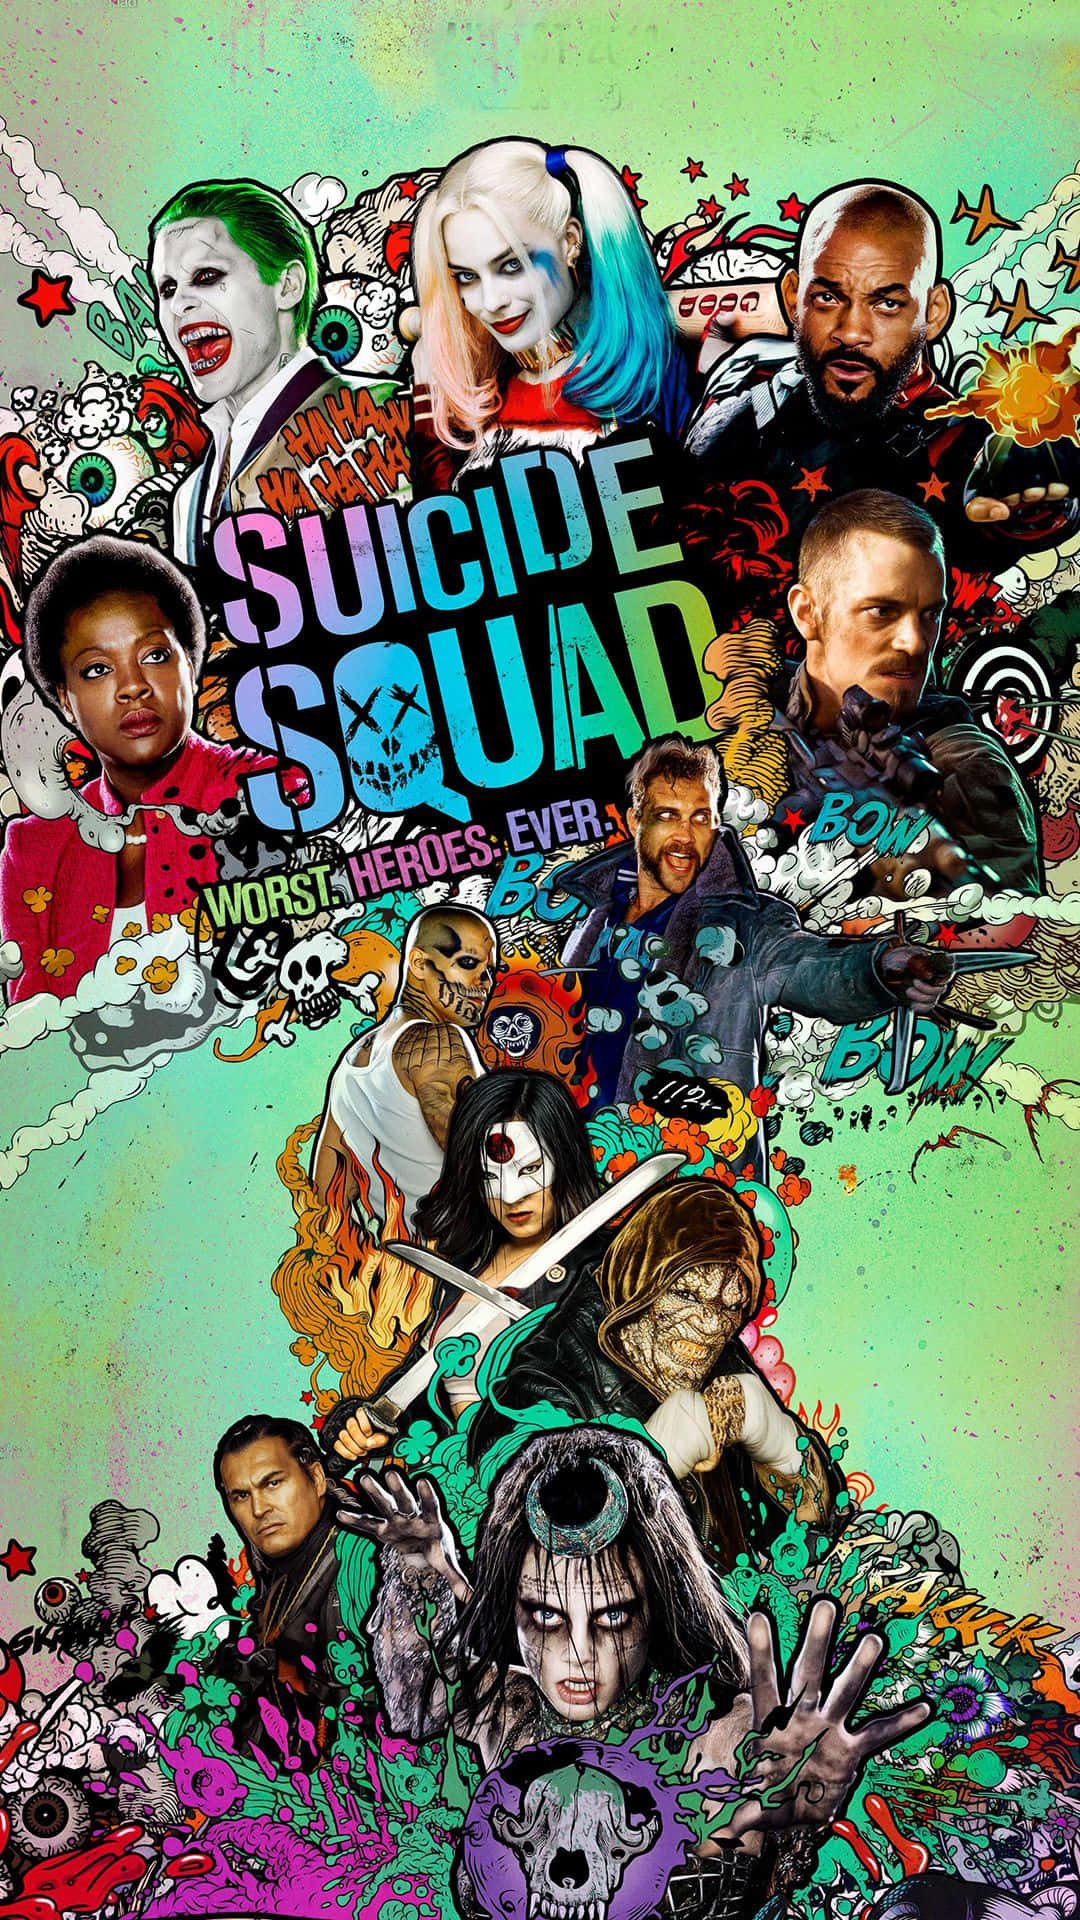 Suicidesquad Cast Del Film In Azione